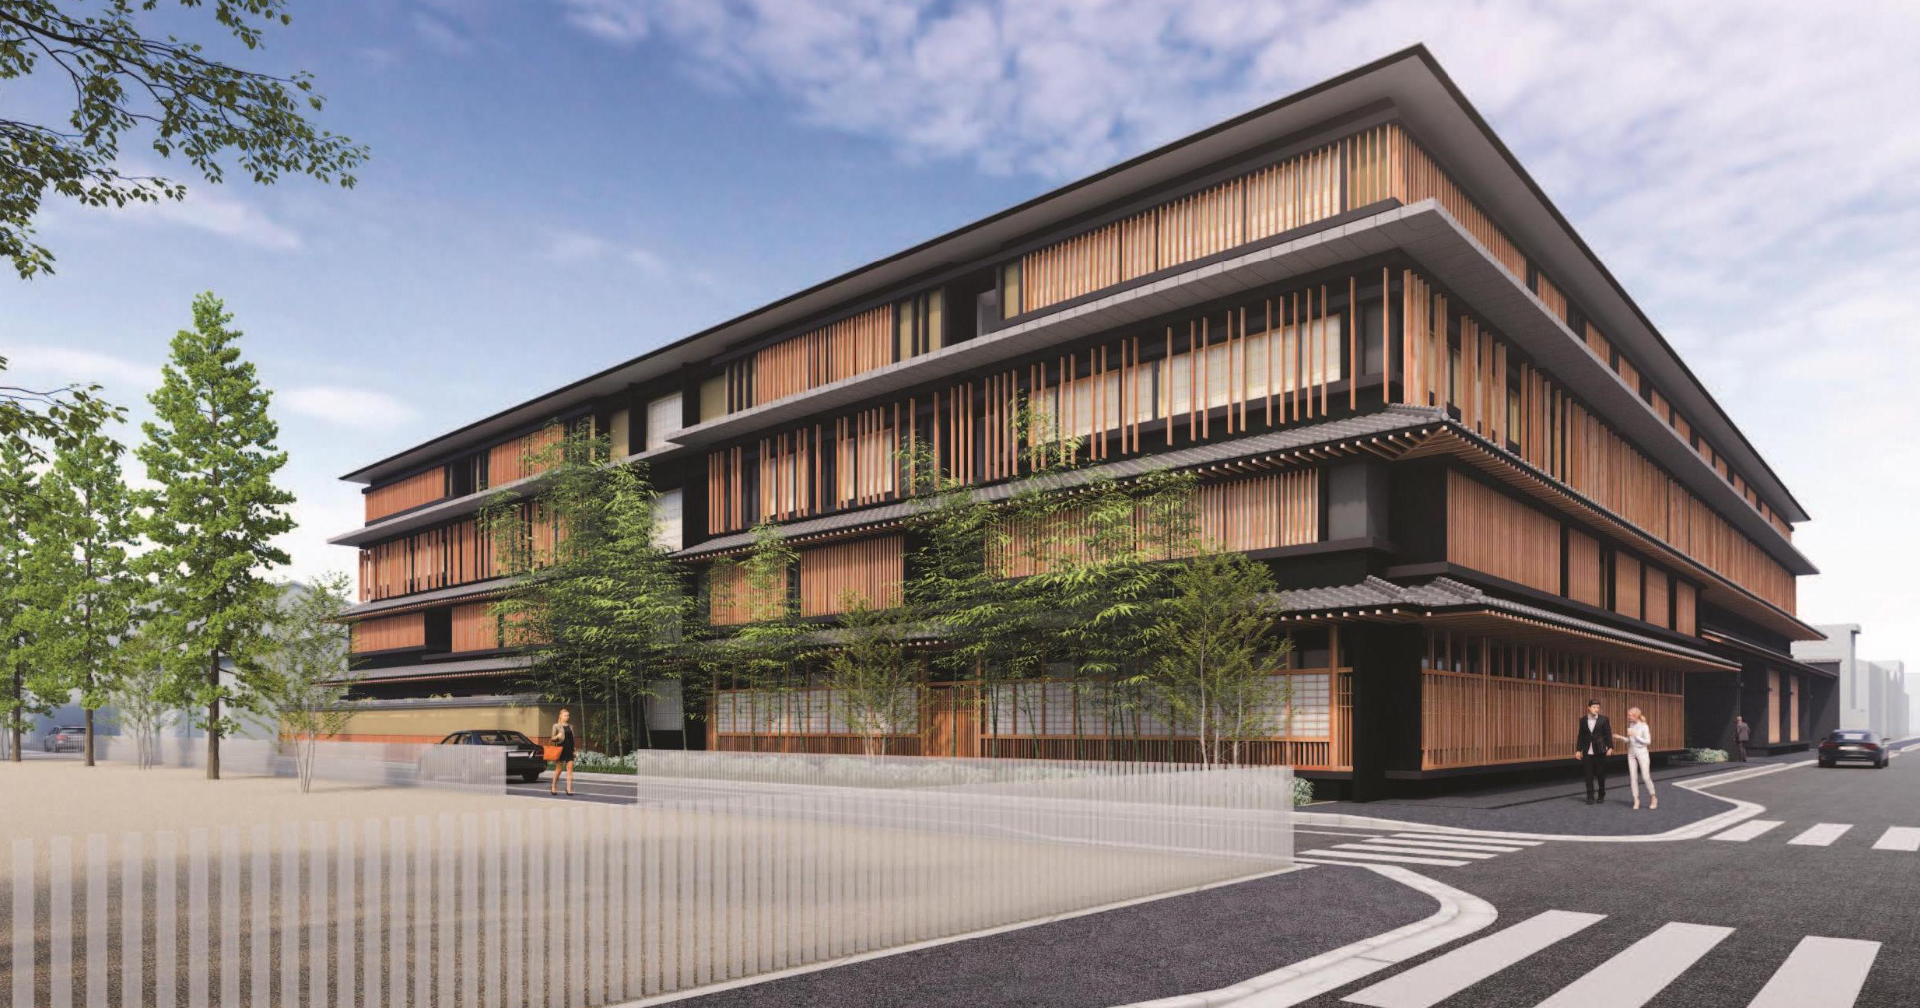 กลุ่มดุสิตธานี พร้อมเปิดตัว 2 โรงแรมหรูในเกียวโต รับการฟื้นตัวของอุตสาหกรรมท่องเที่ยว